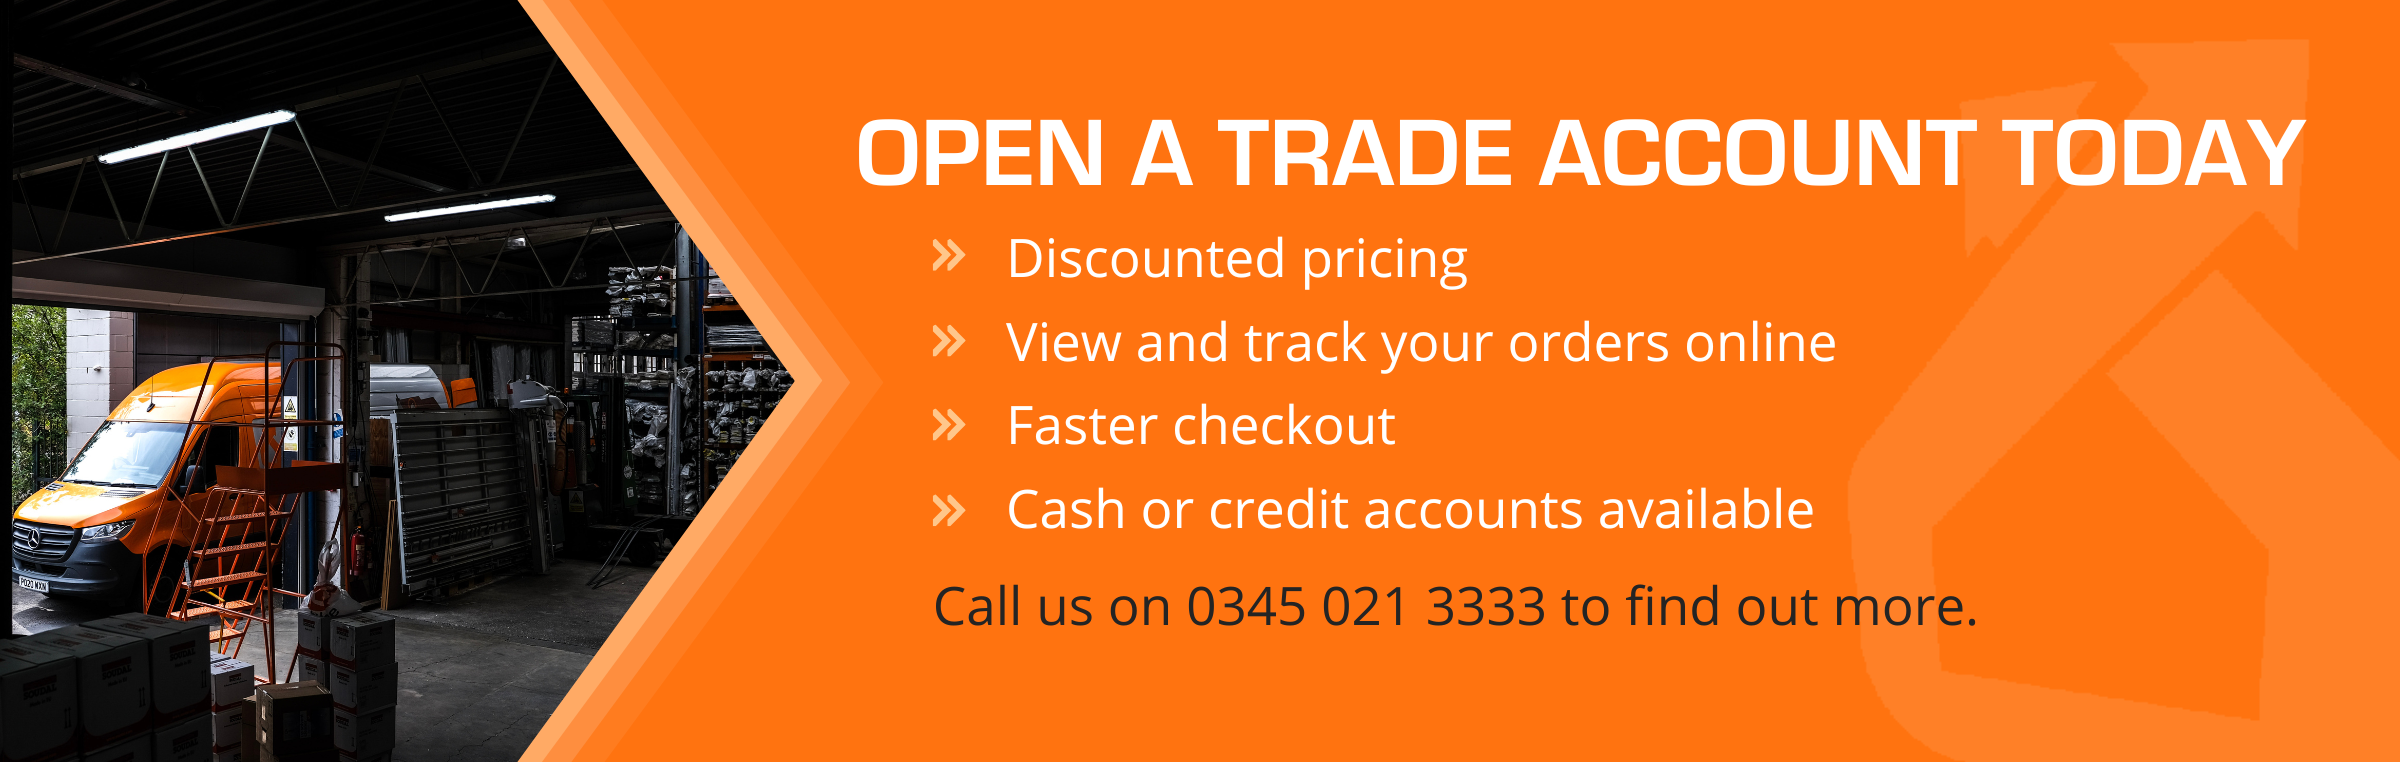 Open a trade account